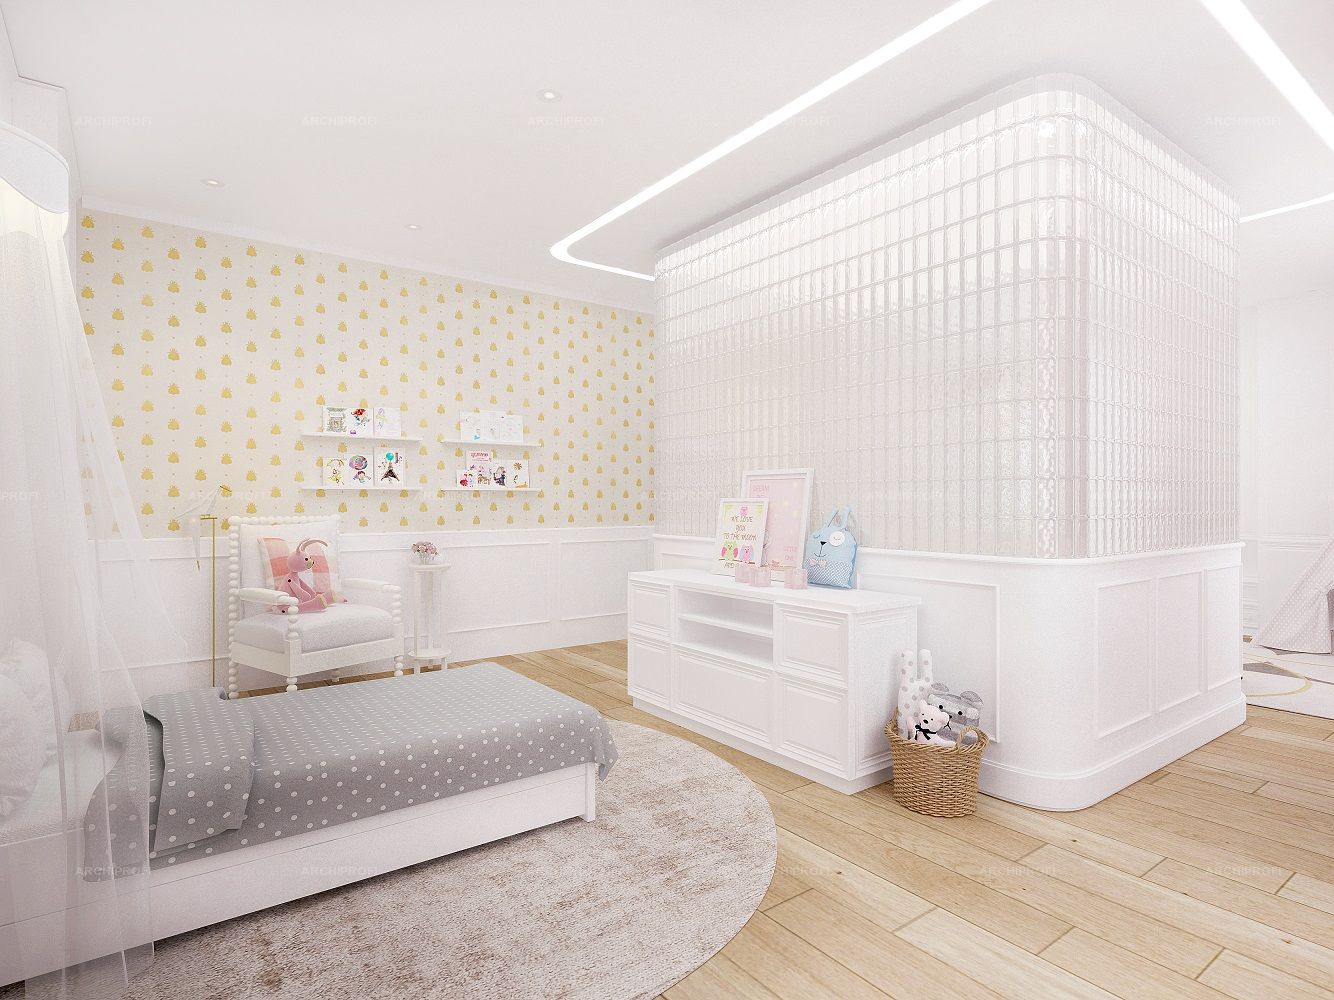 3D интерьера, Детская спальня площадью 500 кв.м. в стиле Неоклассицизм. Проект Коттедж - Коттедж в стиле неоклассика, Автор проекта: Архитекторы Лариса Талис